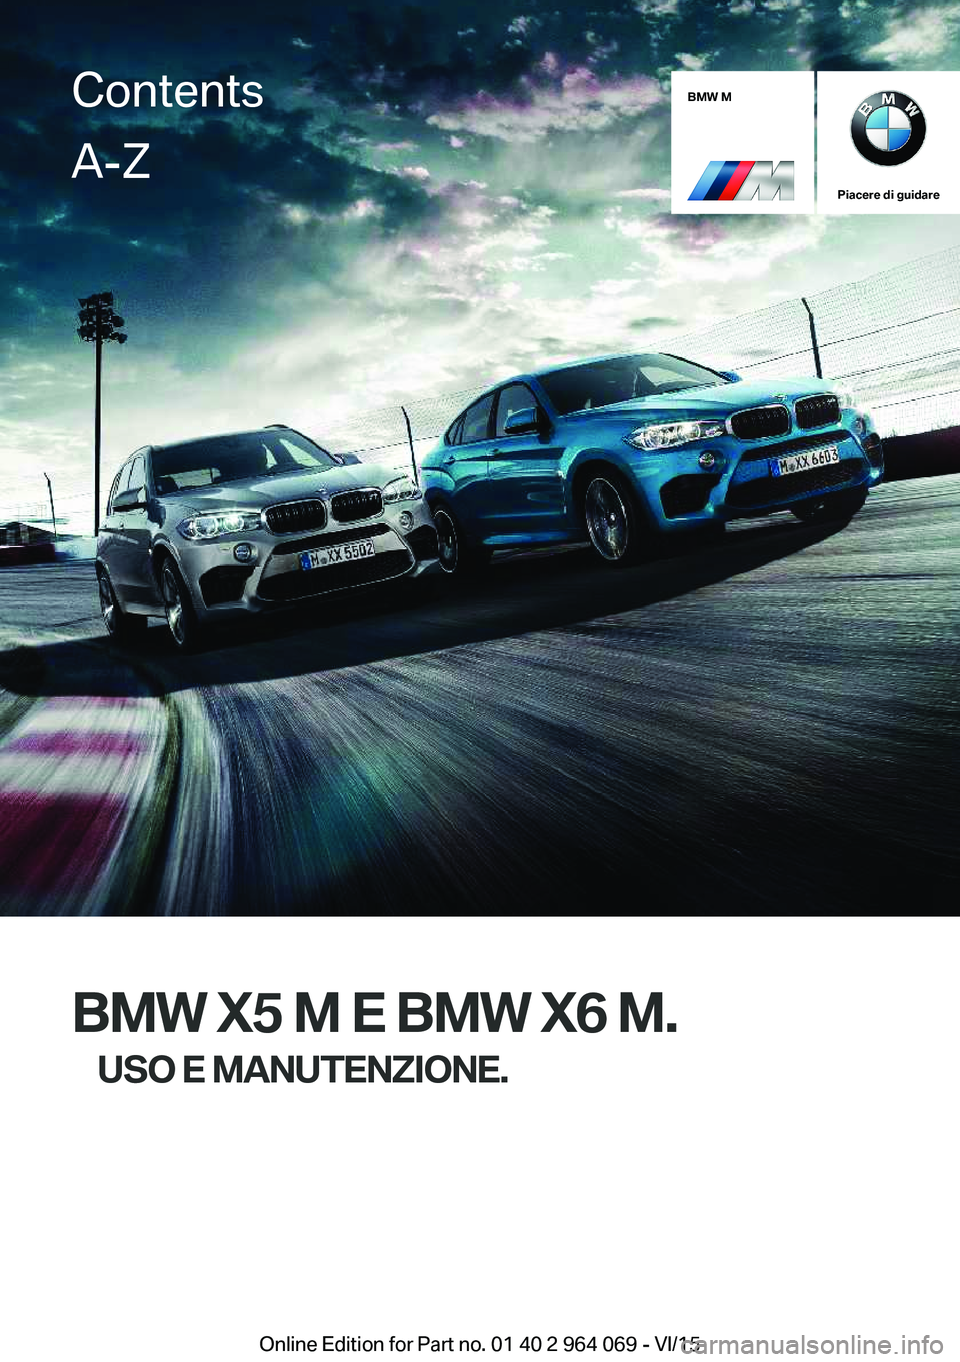 BMW X6 M 2016  Libretti Di Uso E manutenzione (in Italian) BMW M
Piacere di guidare
BMW X5 M E BMW X6 M.USO E MANUTENZIONE.
ContentsA-Z
Online Edition for Part no. 01 40 2 964 069 - VI/15   